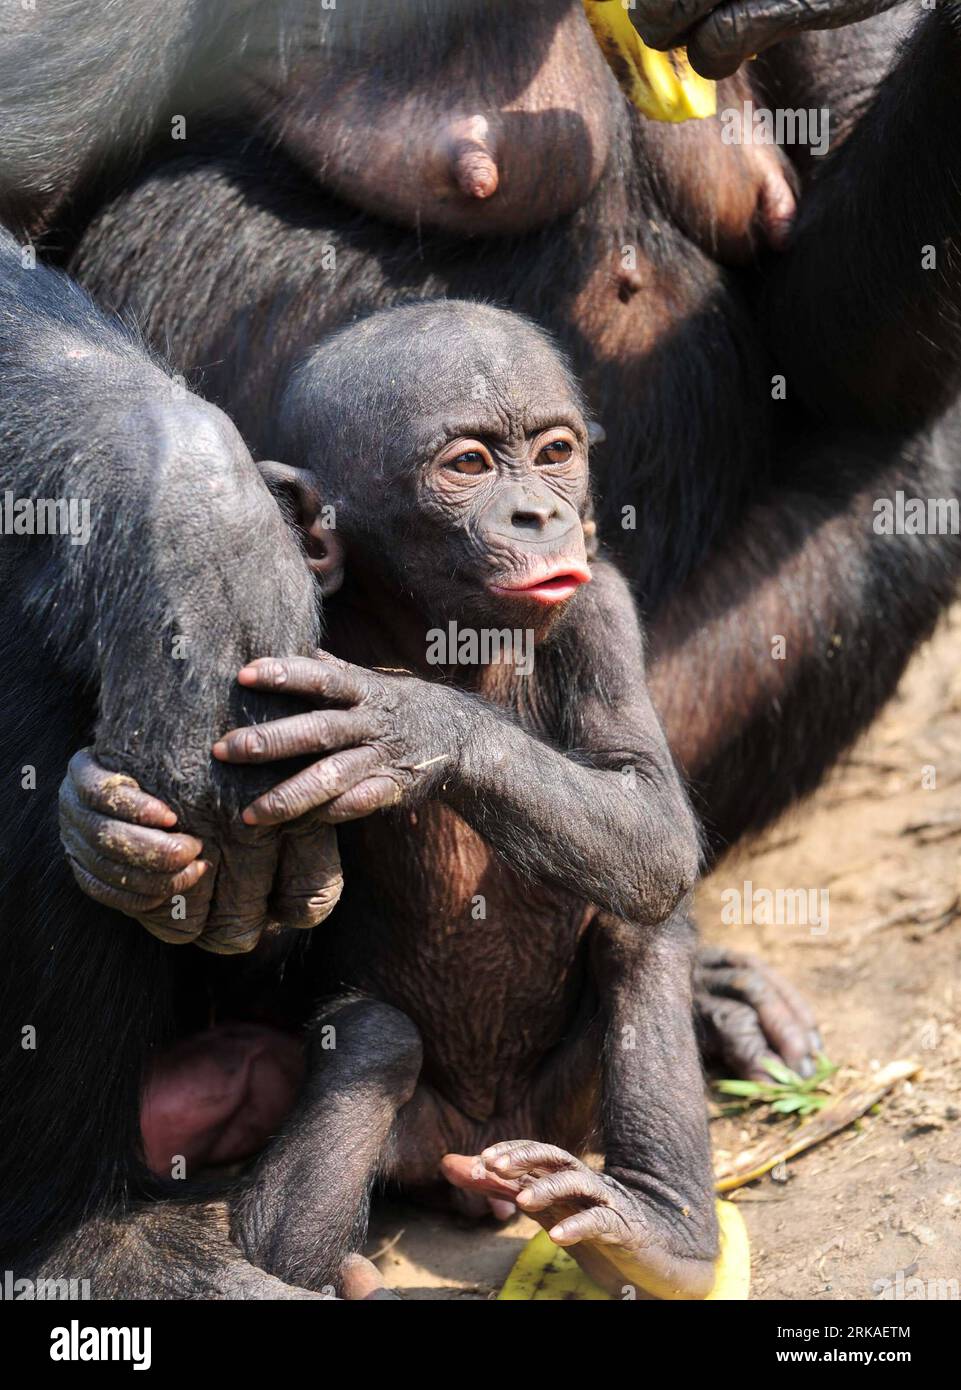 Bildnummer: 54340120 Datum: 23.08.2010 Copyright: imago/Xinhua (100823) -- KINSHASA, 23. August 2010 (Xinhua) -- Ein Bonobo-Baby ruht in den Armen seiner Mutter in Lola ya Bonobo in den Vororten von Kinshasa, Hauptstadt der Demokratischen Republik Kongo (DR Kongo), 23. August 2010. Lola ya Bonobo, ein Heiligtum für über 60 Bonobos, wurde von der Belgierin Claudine Andre in gegründet. (Xinhua/Liu Chan) (zw) (3)DR CONGO-KINSHASA-LOLA YA BONOBO PUBLICATIONxNOTxINxCHN Tiere kbdig xkg 2010 hoch o0 Tierheim Affe Jungtier Bildnummer 54340120 Datum 23 08 2010 Copyright Imago XINHUA Kinshasa August 23 2010 XINHUA Bonobo Ba Stockfoto